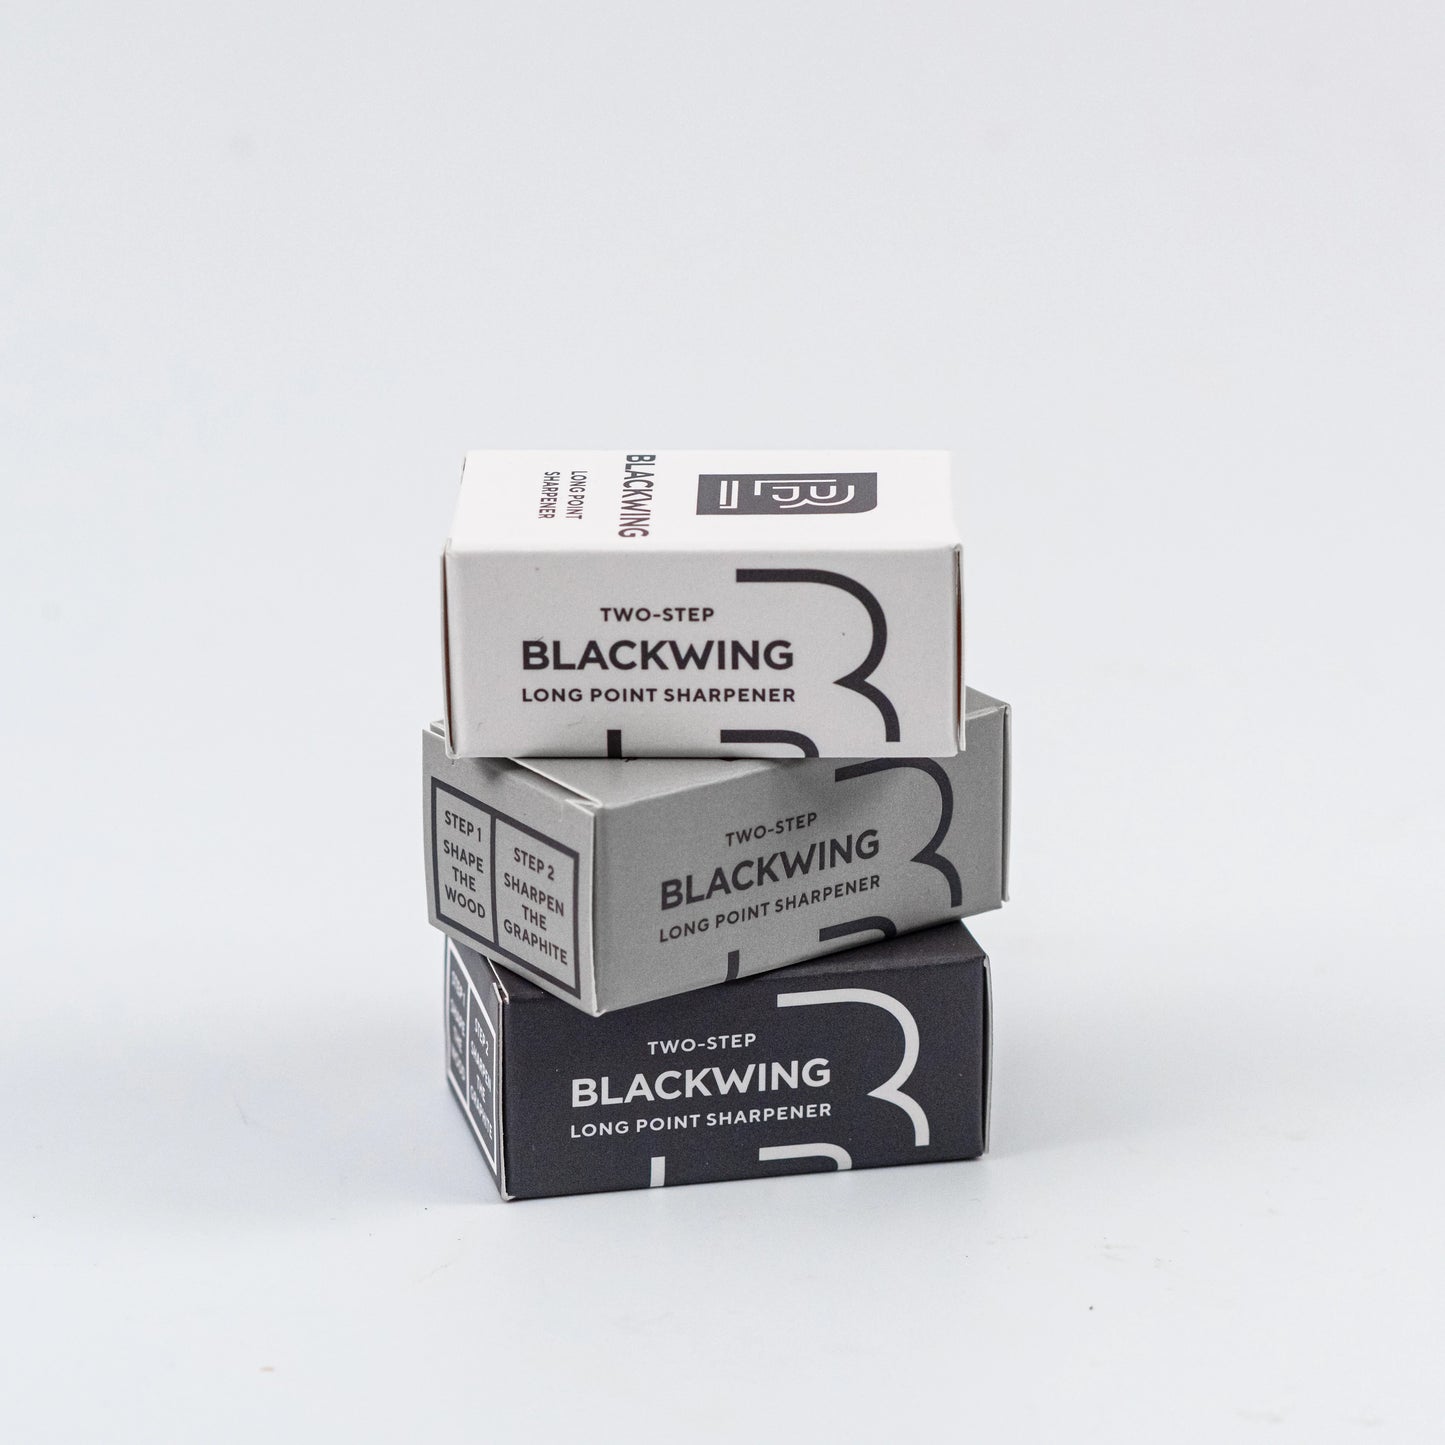 Blackwing Long Point Sharpener - White